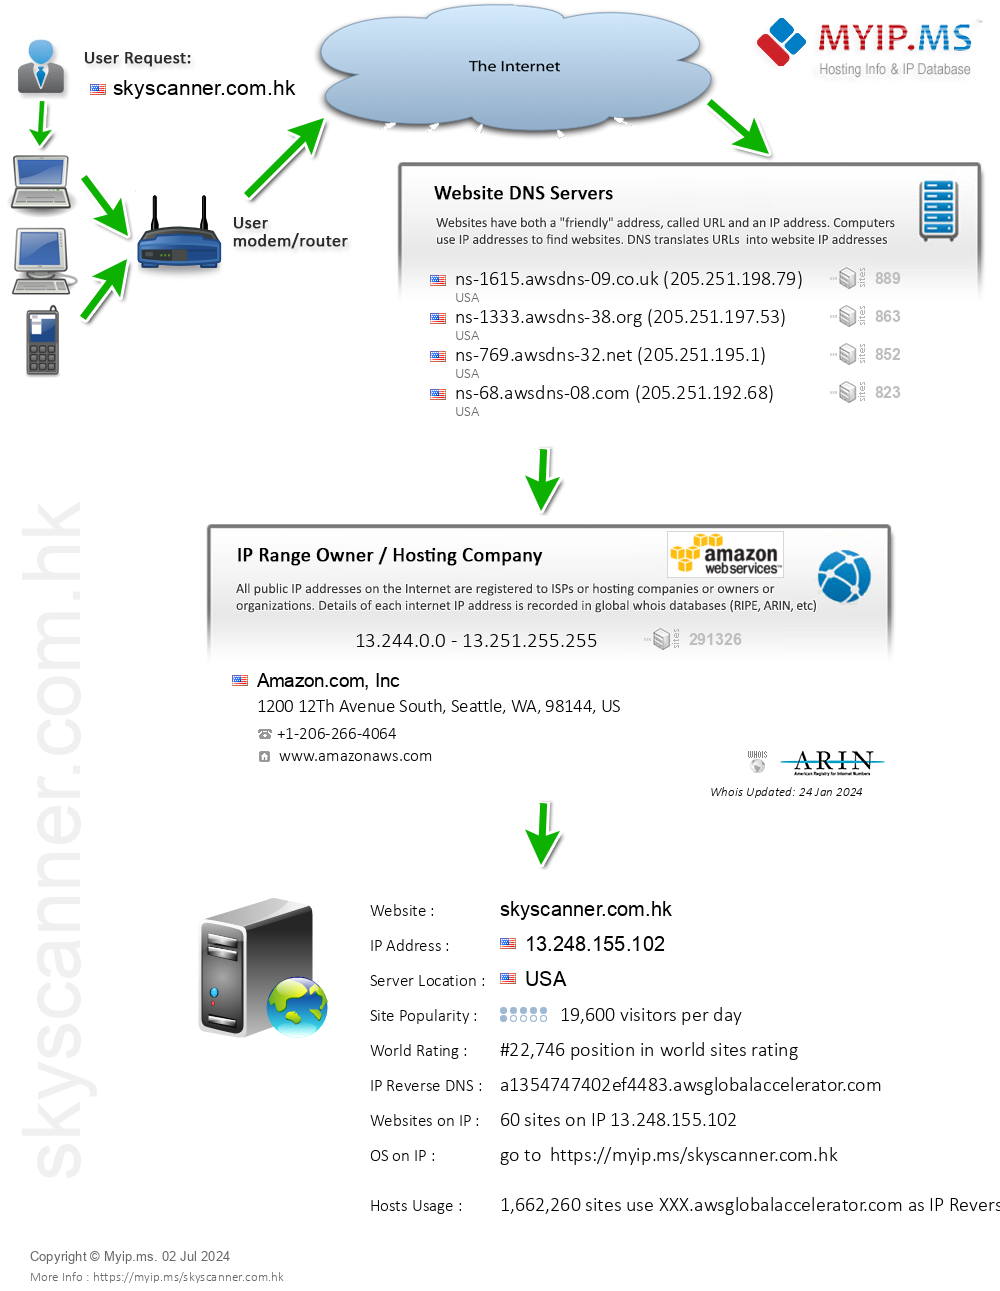 Skyscanner.com.hk - Website Hosting Visual IP Diagram